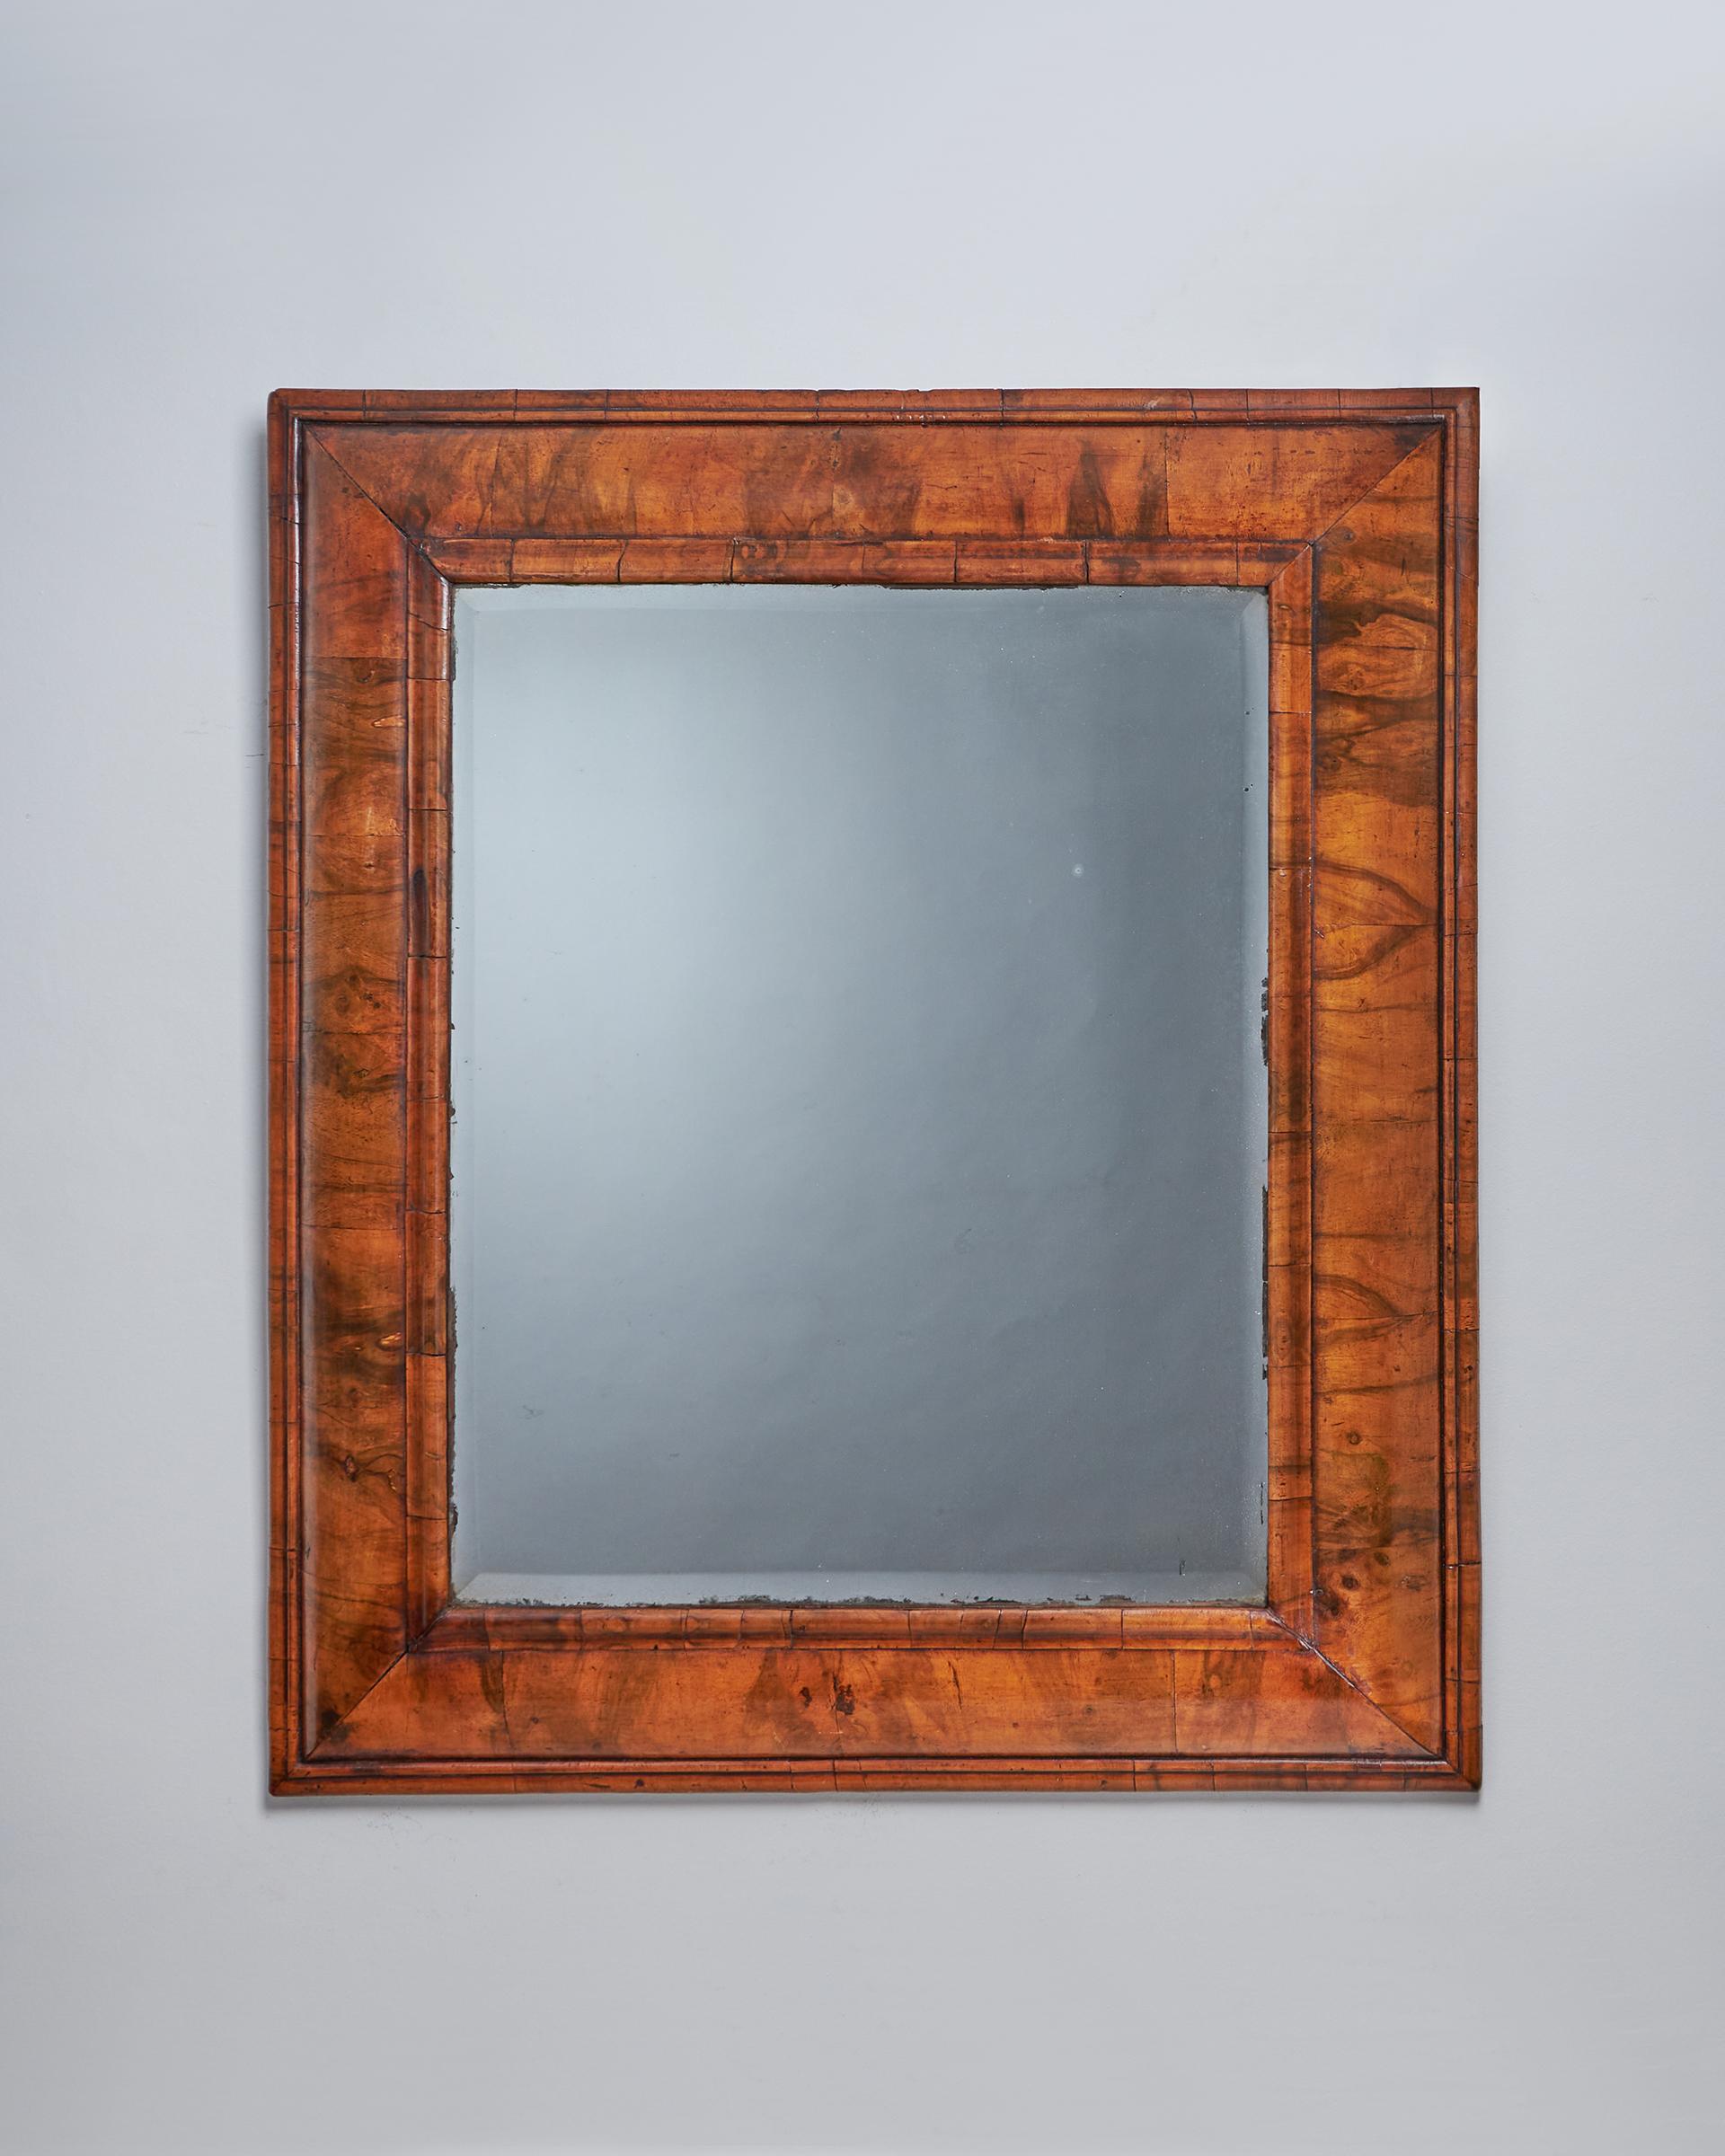 Un très grand et rare miroir à coussin en noyer figuré William and Mary du XVIIe siècle, vers 1670-1690.

La plaque de miroir d'origine à bord biseauté est bordée de fines moulures ovoliennes à grain croisé. Le cadre pulviné est entièrement décoré